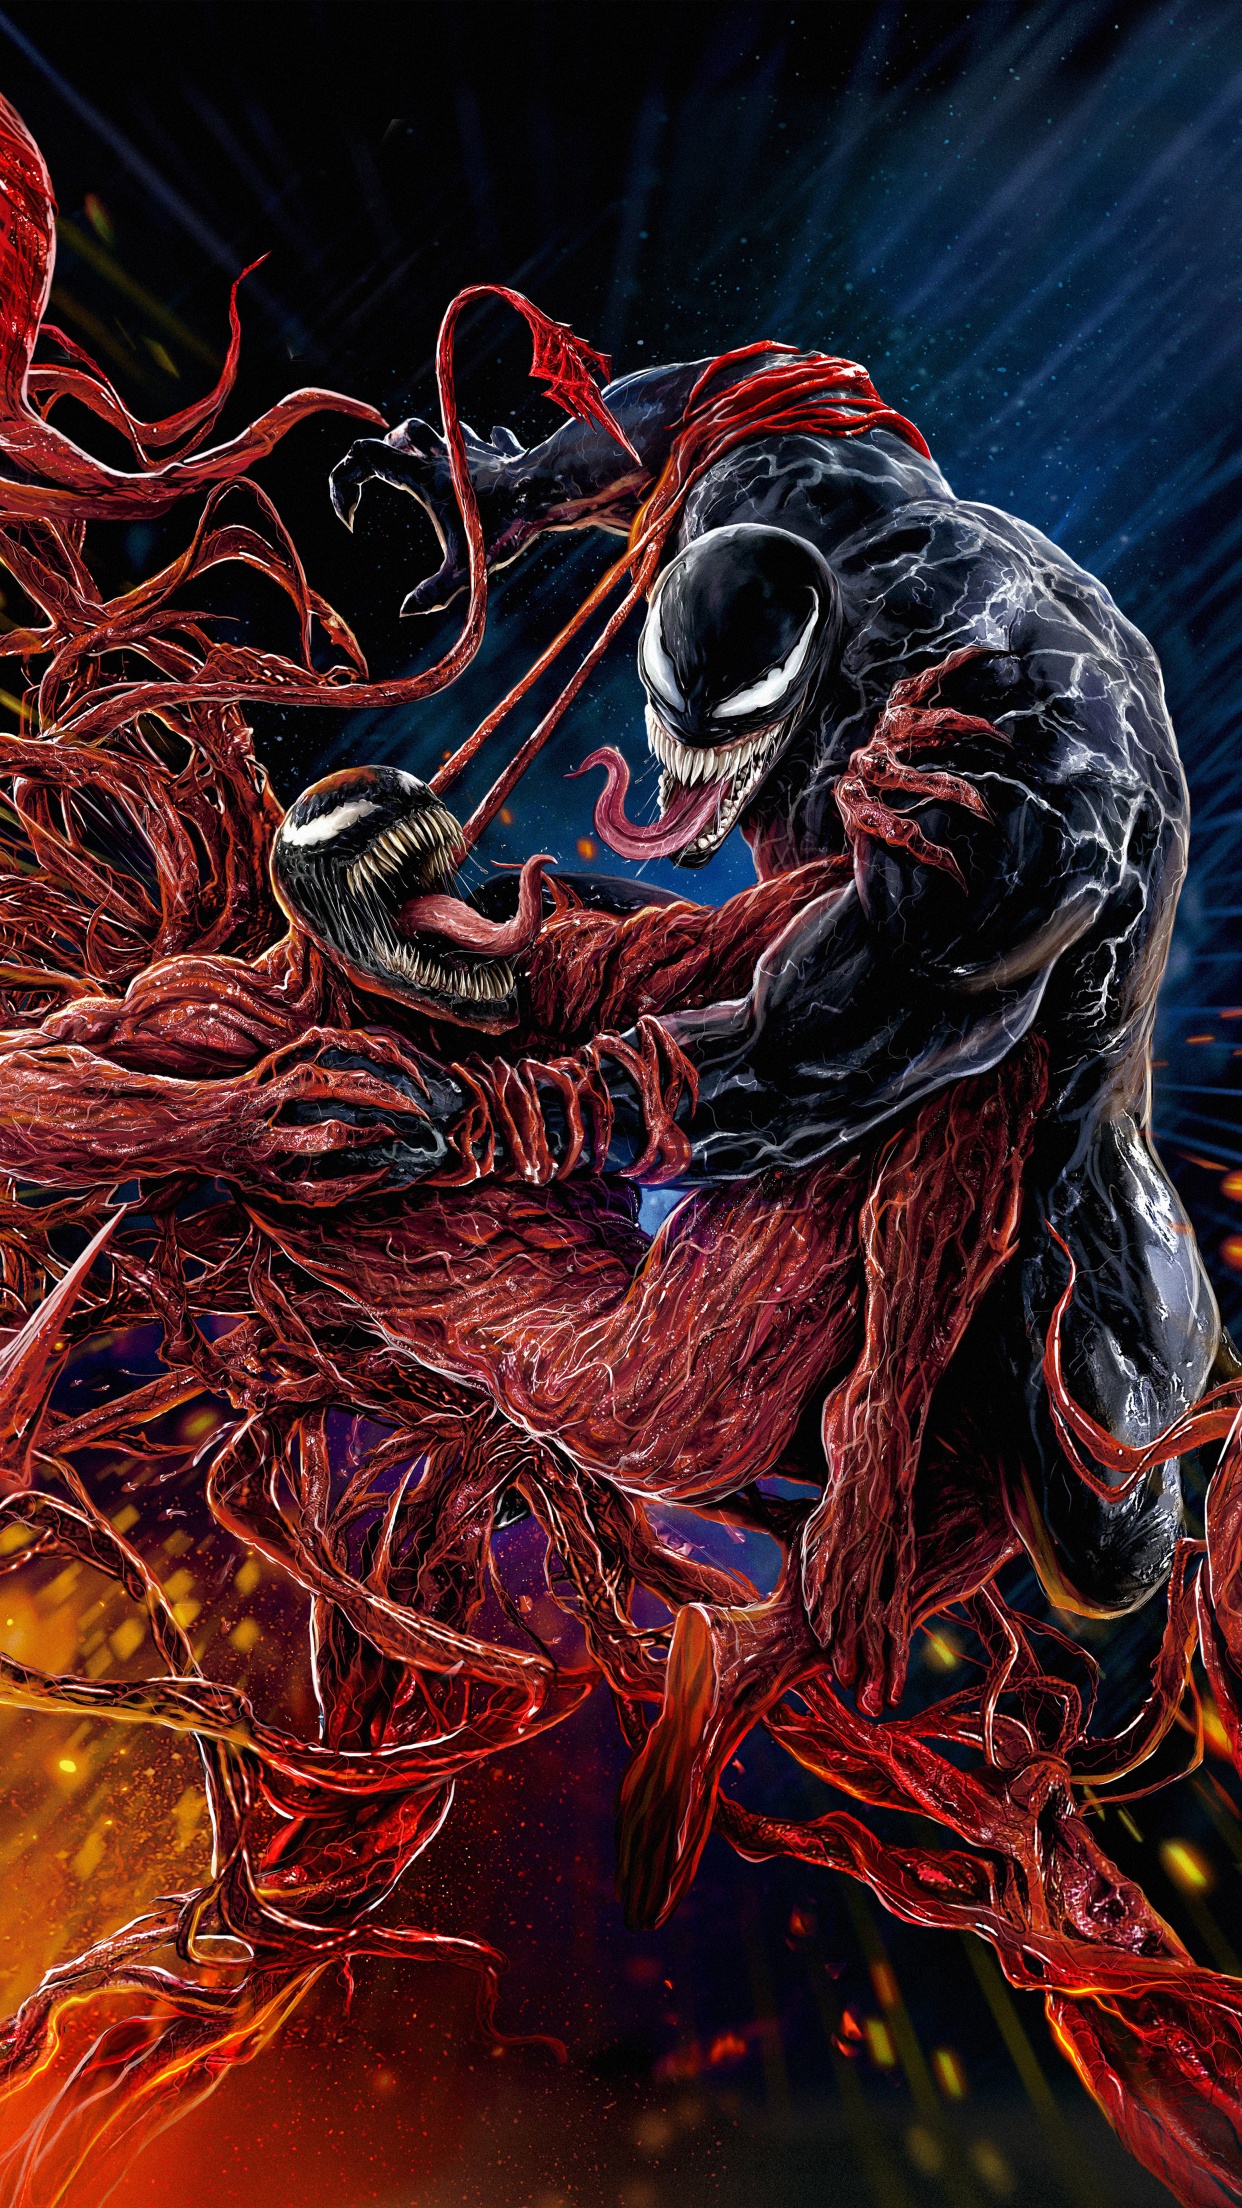 Chào đón bộ sưu tập những hình nền độc đáo với chủ đề Venom: Let There Be Carnage Wallpaper 4K. Với những hình ảnh được thiết kế đặc biệt dựa trên nhân vật Marvel Comics, chiếc điện thoại của bạn sẽ trở nên phong cách và ấn tượng hơn bao giờ hết.